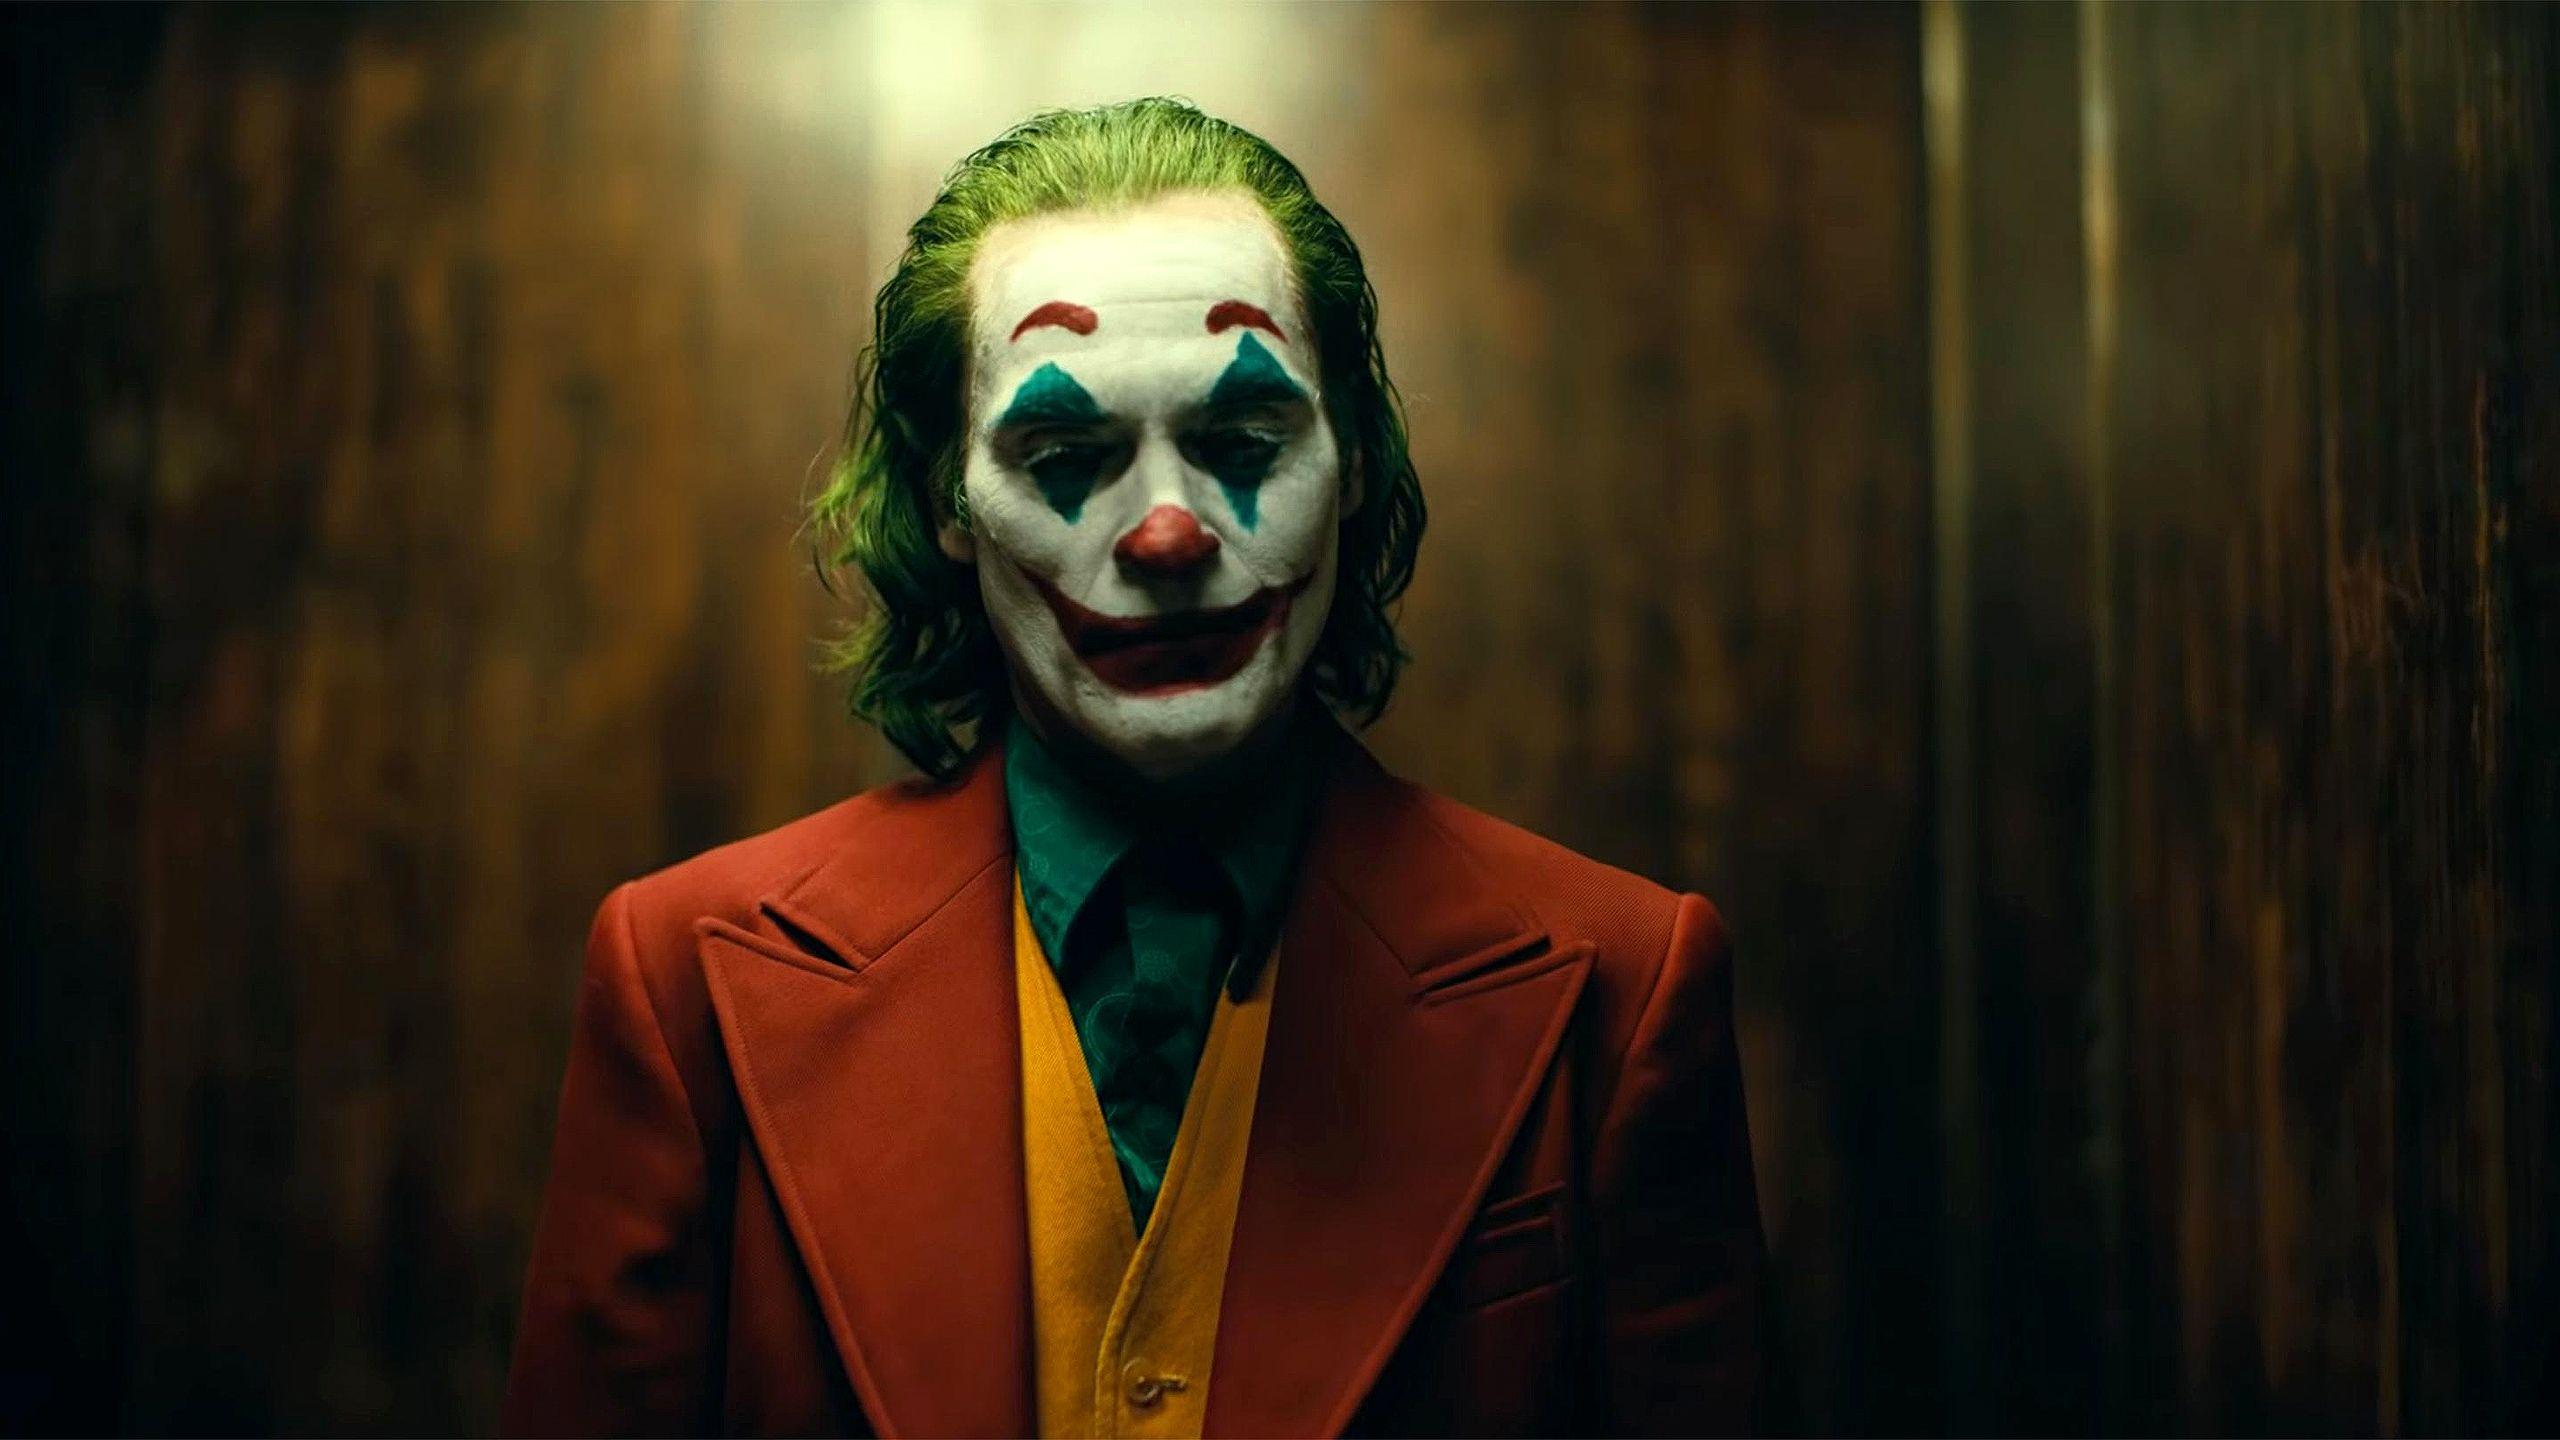 Đánh giá phim về Joker 2560x1440 (2019).  MỘT